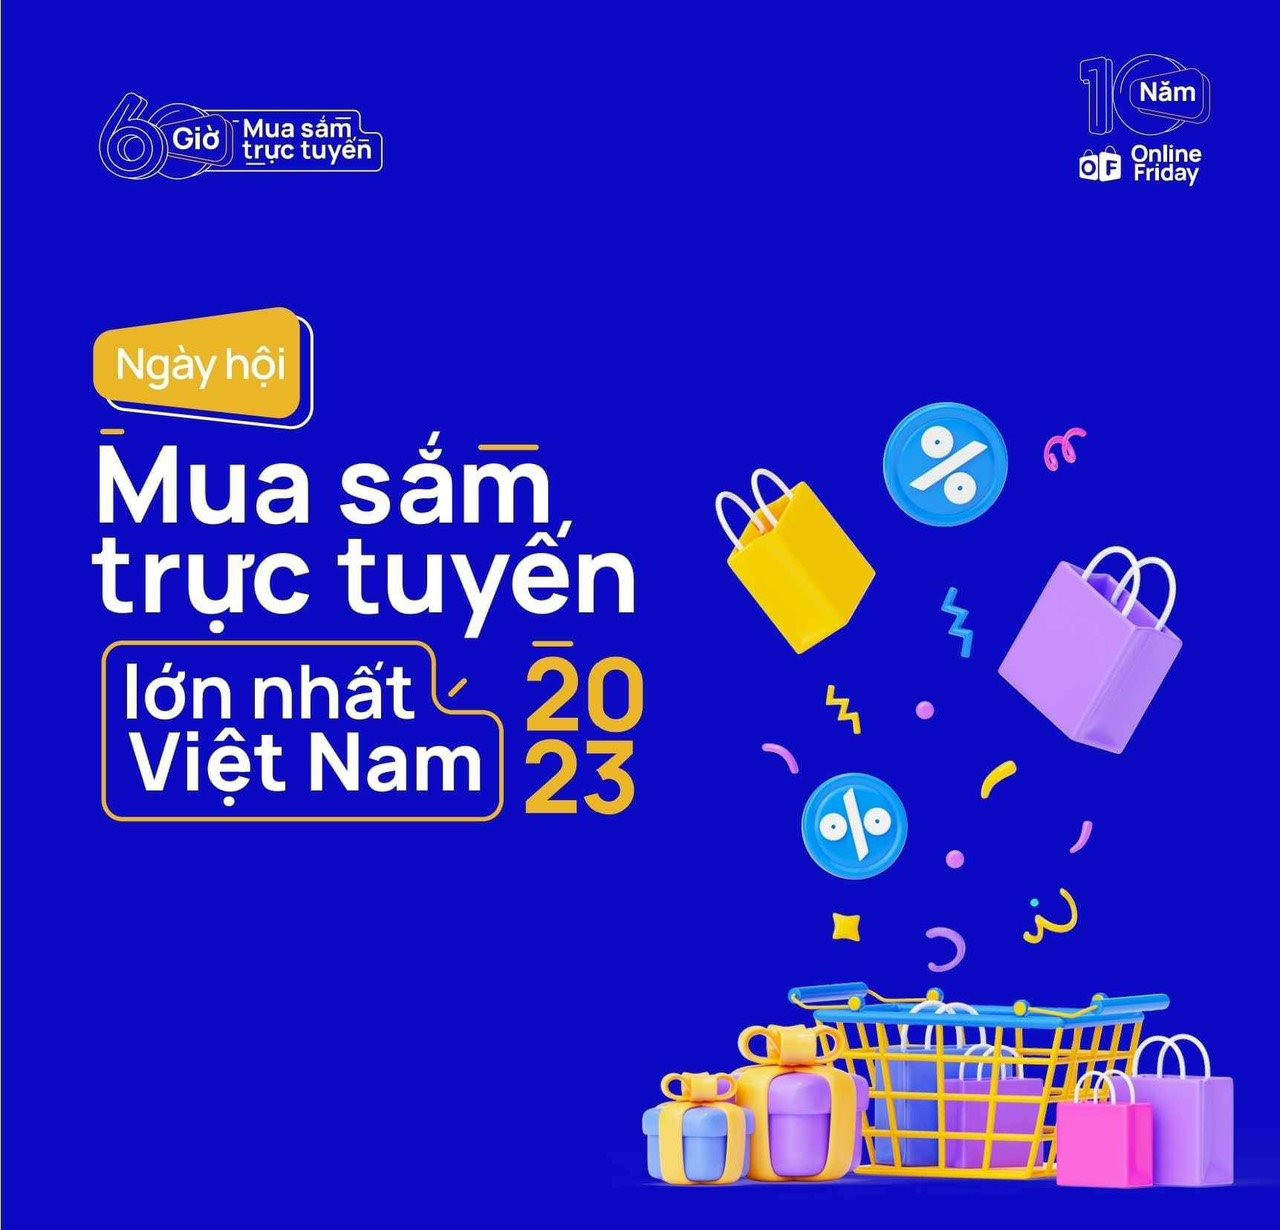 TikTokShop, Shopee, Lazada cùng chung tay tổ chức đại hội TMĐT Việt Nam, tặng voucher tới 300 triệu đồng, nhắm mốc 1 tỷ lượt xem live và 3 triệu đơn hàng - Ảnh 3.